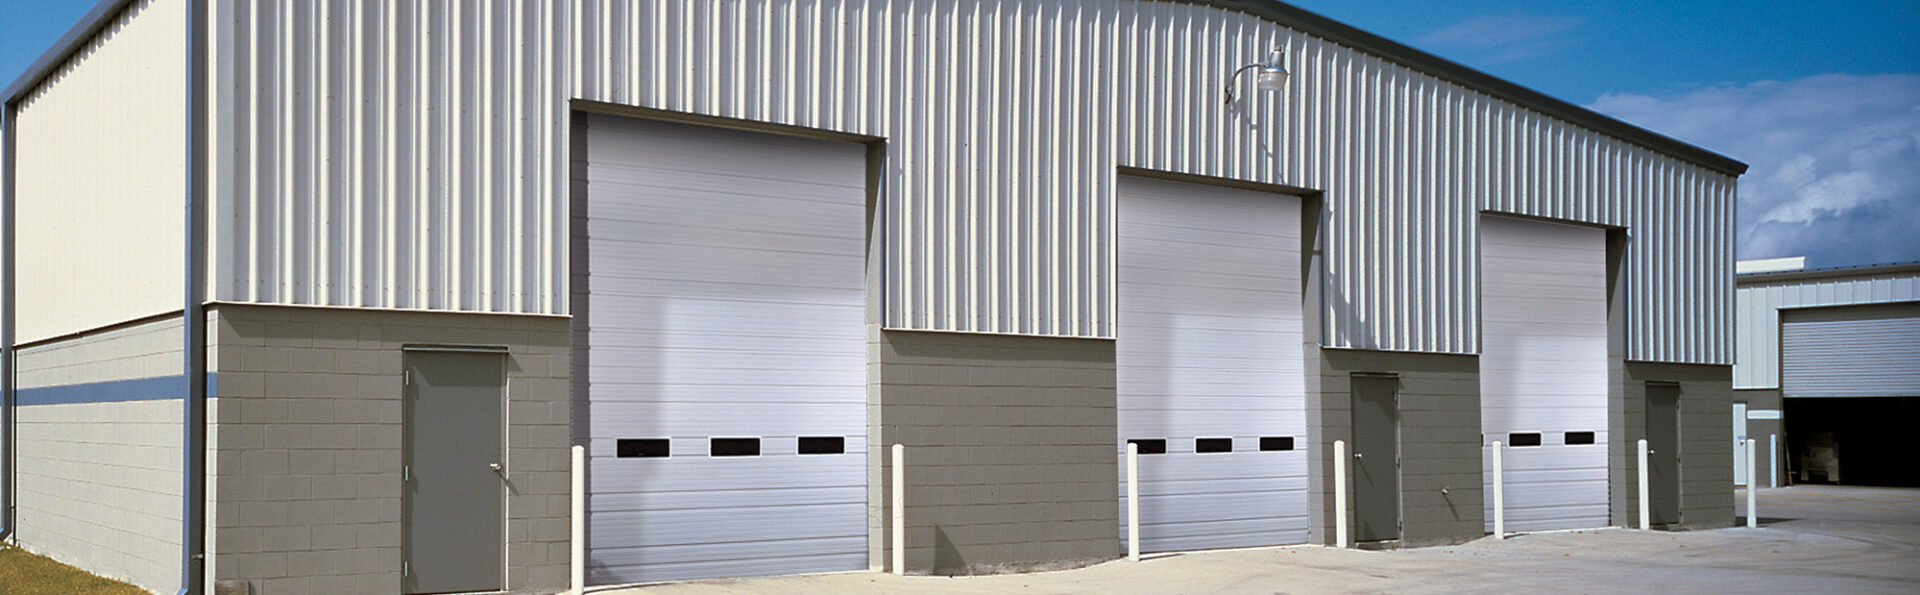  Oversized Garage Doors